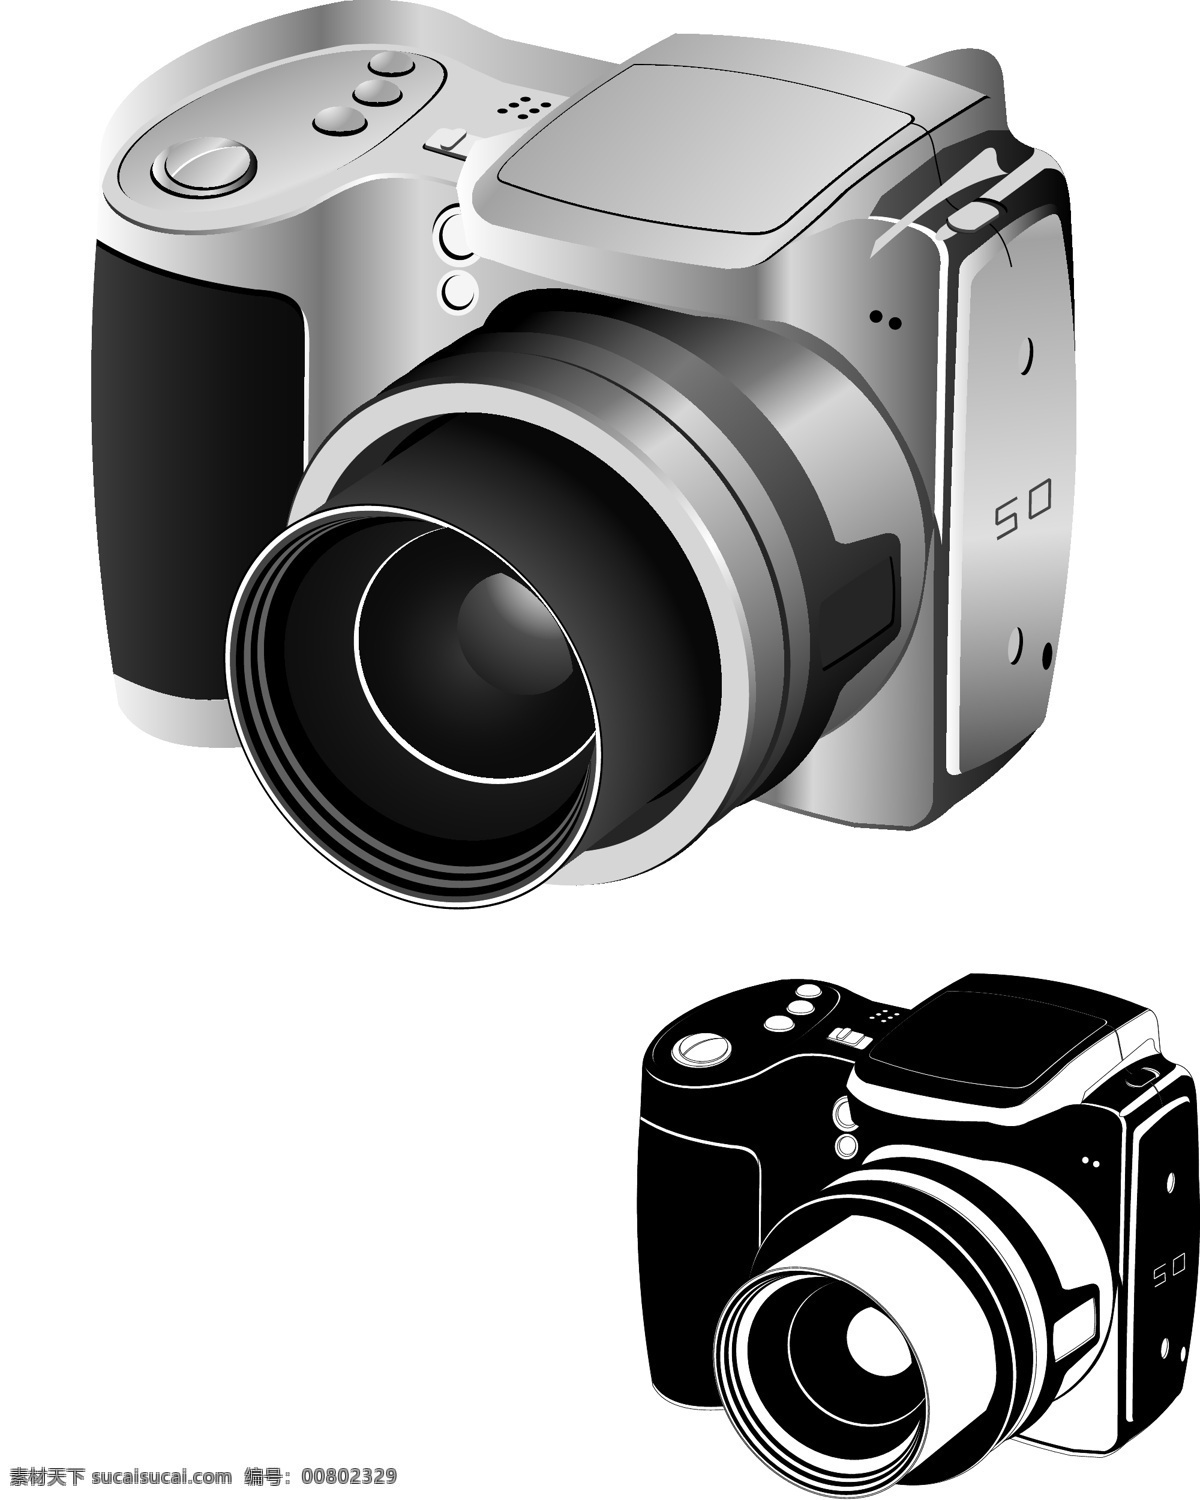 数码相机 矢量 数码相机矢量 数码相机素材 数码相机剪影 相机矢量素材 相机矢量 相机素材 相机剪影 共享设计矢量 现代科技 数码产品